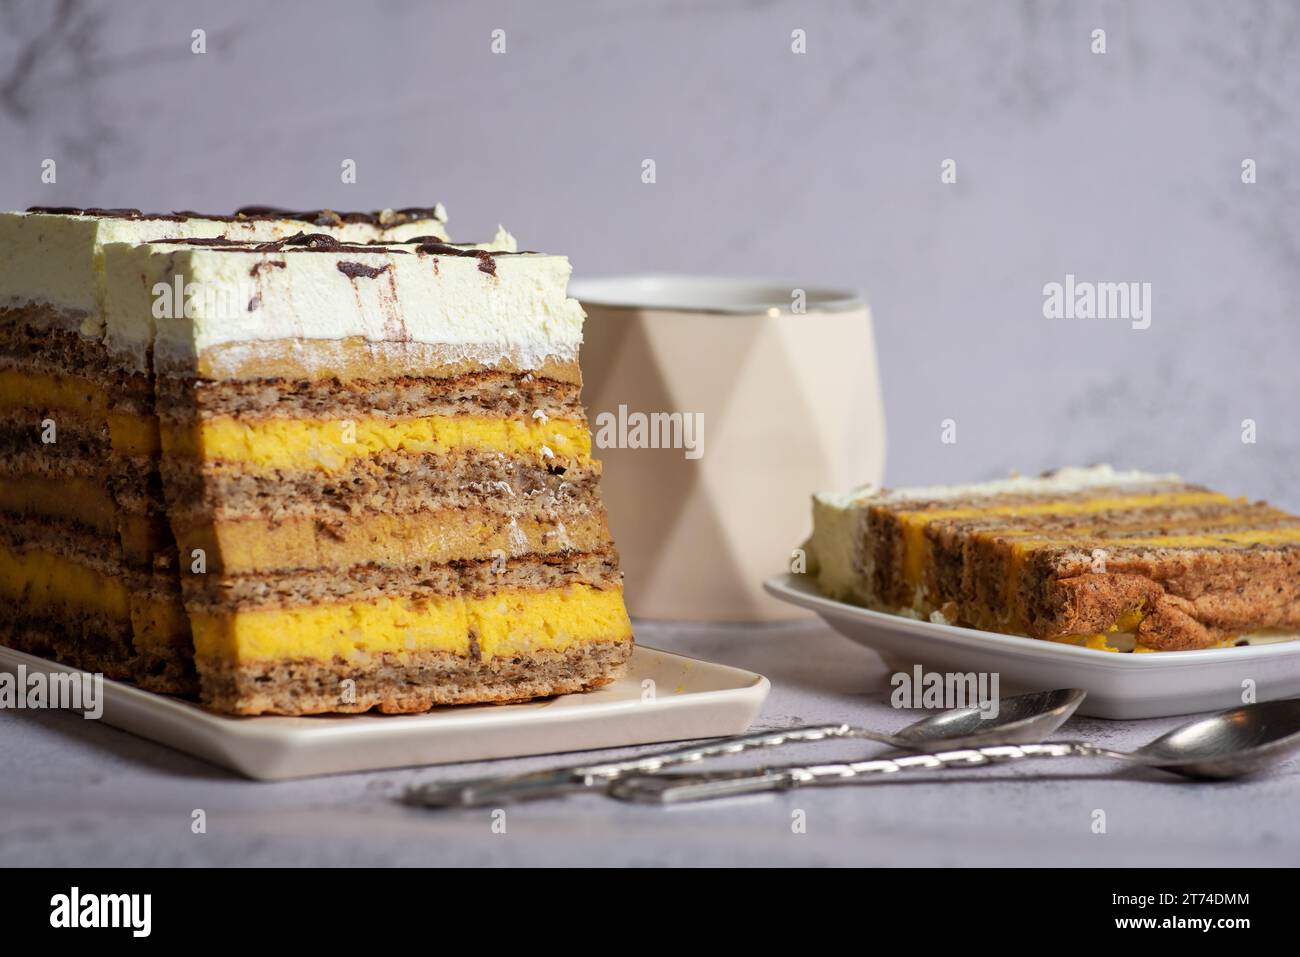 Hausgemachter Mandelkuchen mit verschiedenen Vanille- und Kakaofüllungen, dekoriert mit Schlagsahne. Auf hellgrauem Hintergrund, Nahaufnahme Stockfoto